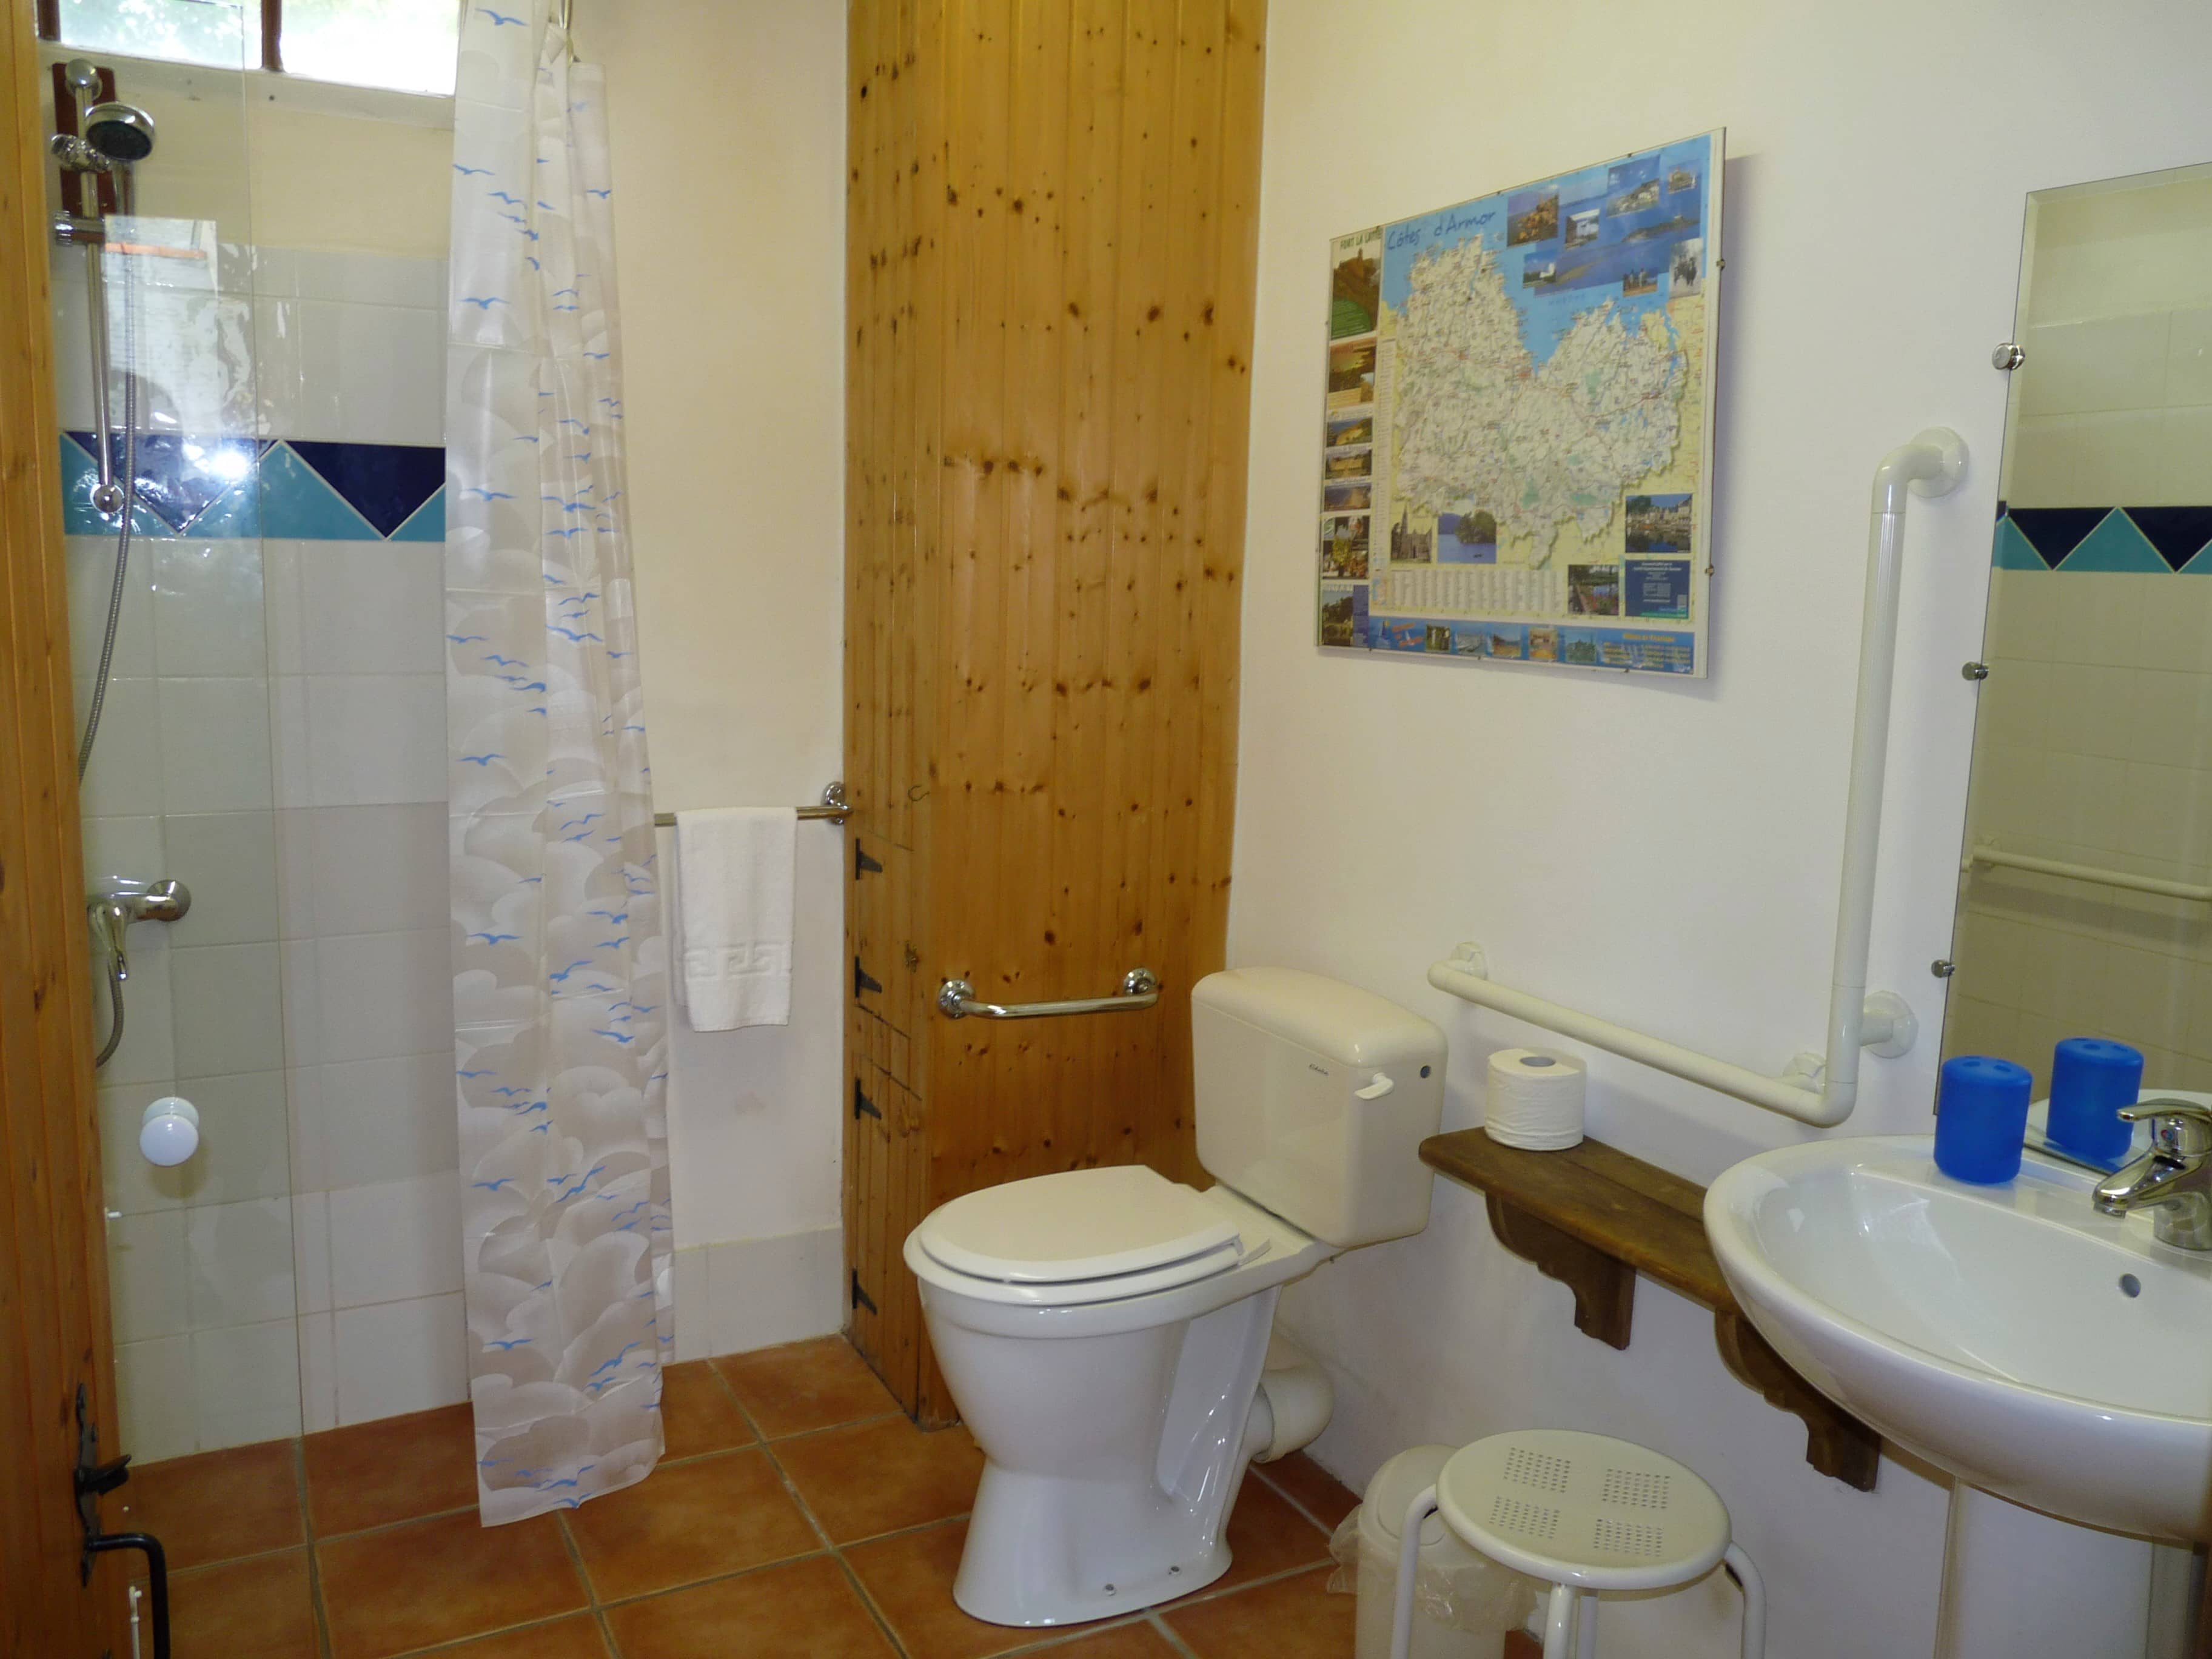 Toilettes propres et bien aménagées du gîte La Julerie en Bretagne, France, avec un lavabo en céramique, des murs en carrelage, un éclairage doux et une décoration moderne. Parfait pour une expérience de toilettes confortable et agréable.